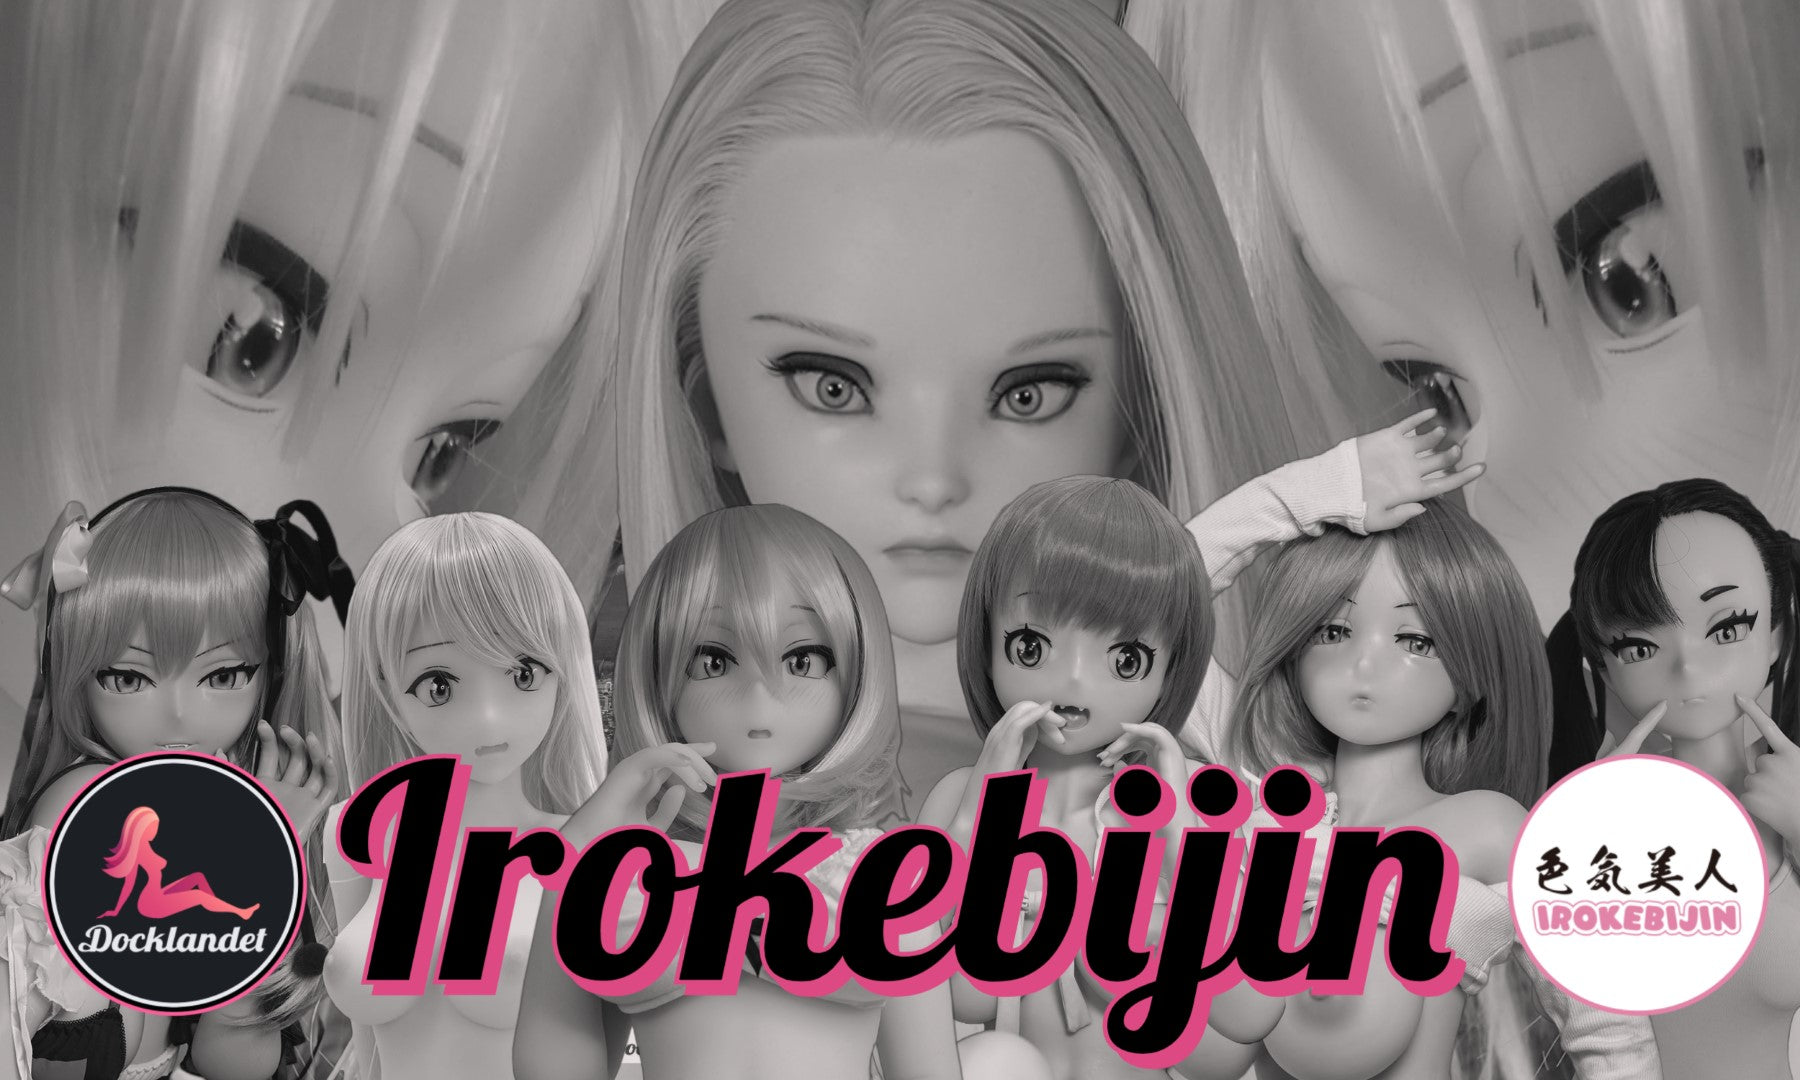 Irokebijin Sexdockor. Irokebijin är väl etablerade i branschen och kända för sina sexdockor med anime-stil. Dockor från Irokebijin är gjorda av TPE eller silikon och av högsta kvalitet. På denna bild syns dockorna Abby, Akane, Suzu, Rico från Irokebijin.